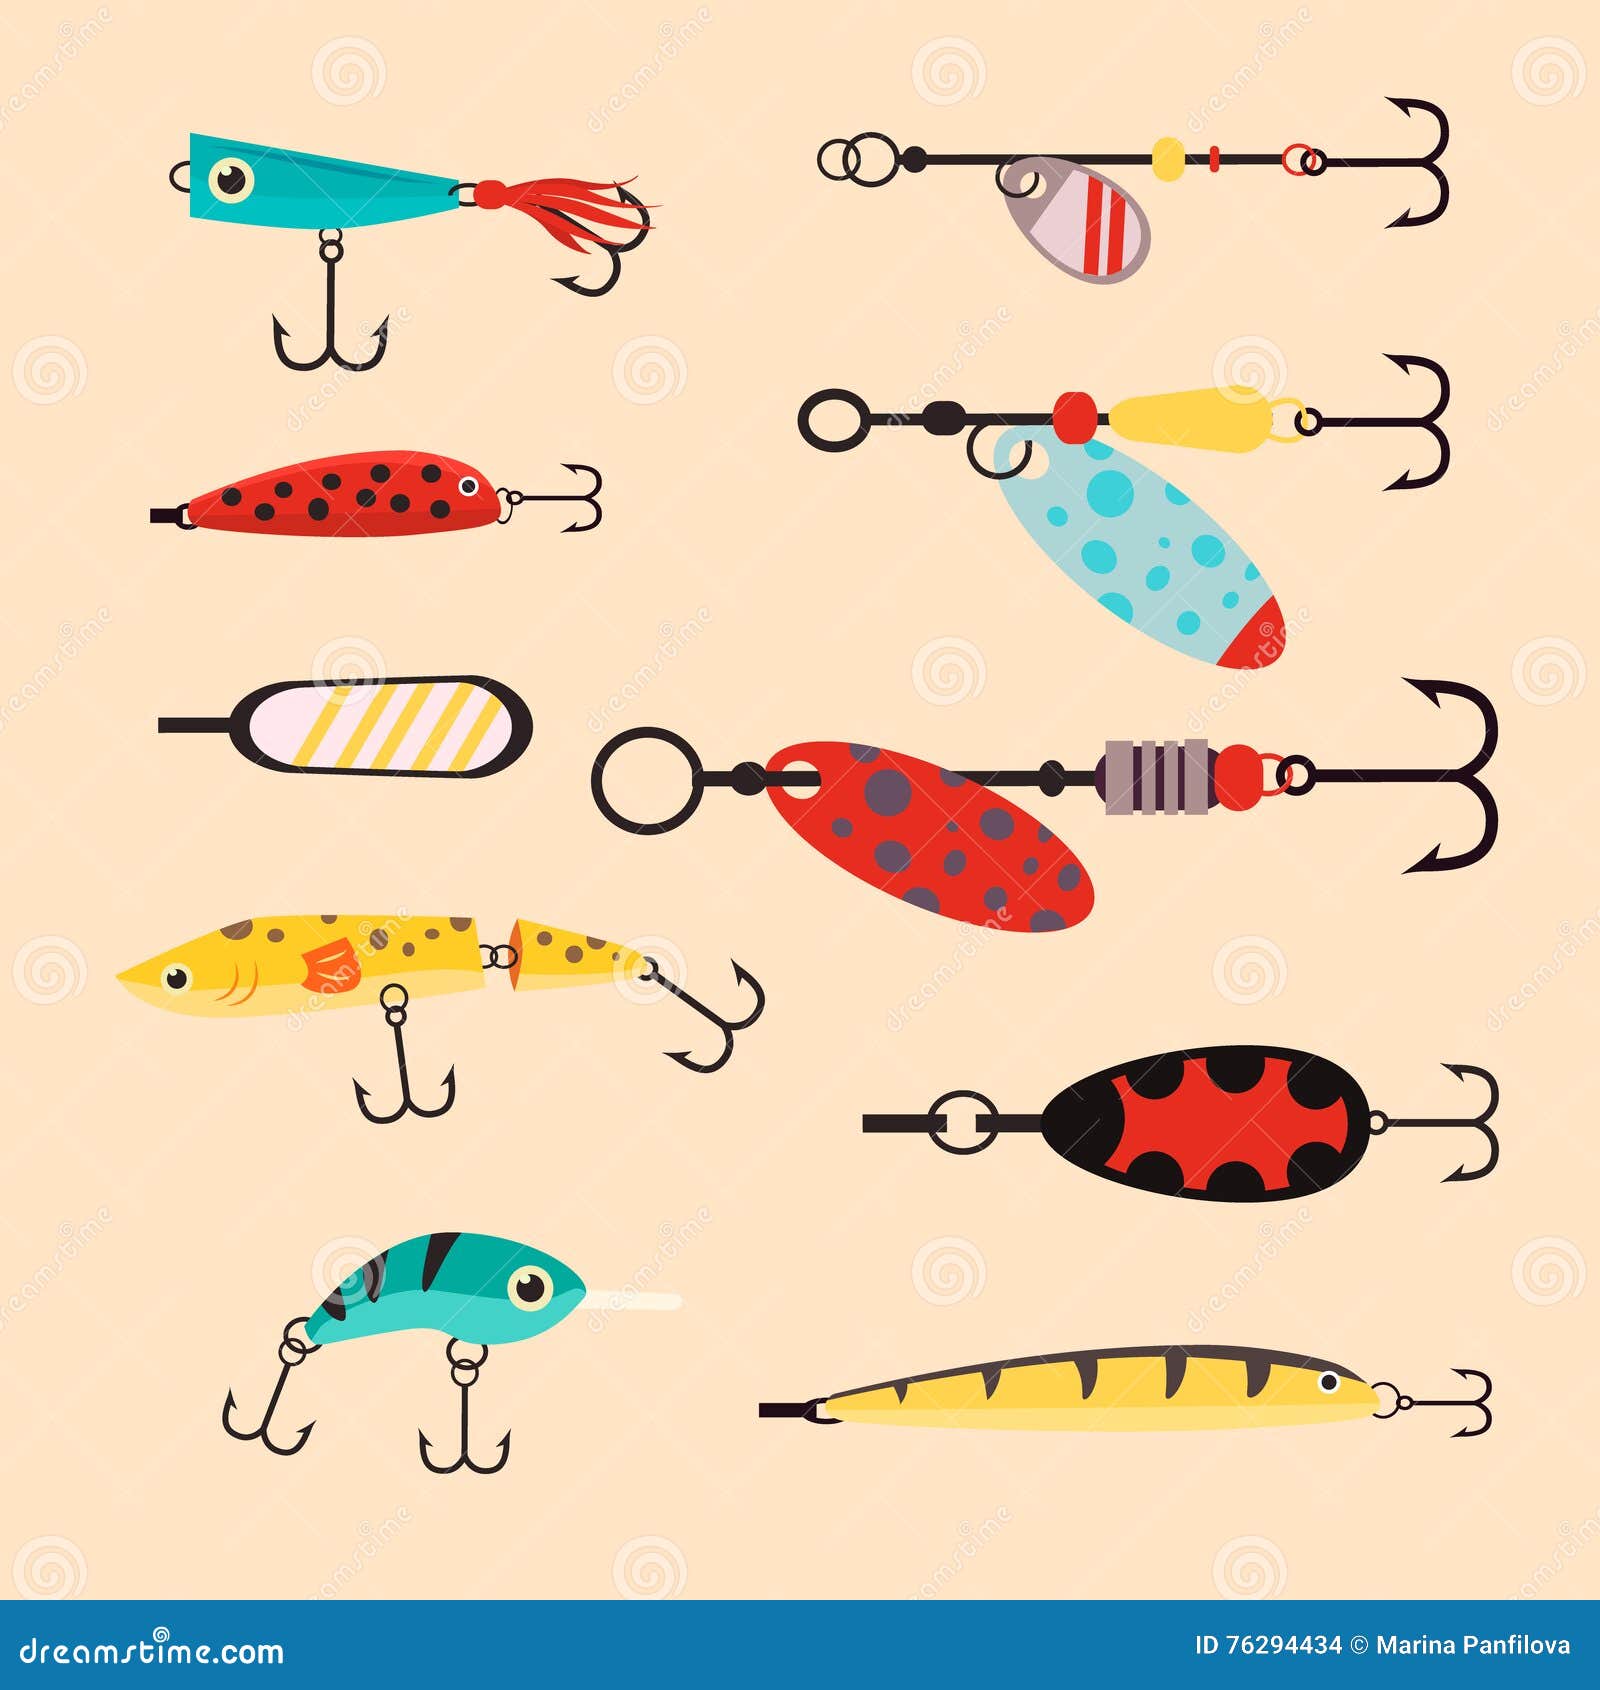 Fishing Lures Stock Illustrations – 624 Fishing Lures Stock Illustrations,  Vectors & Clipart - Dreamstime